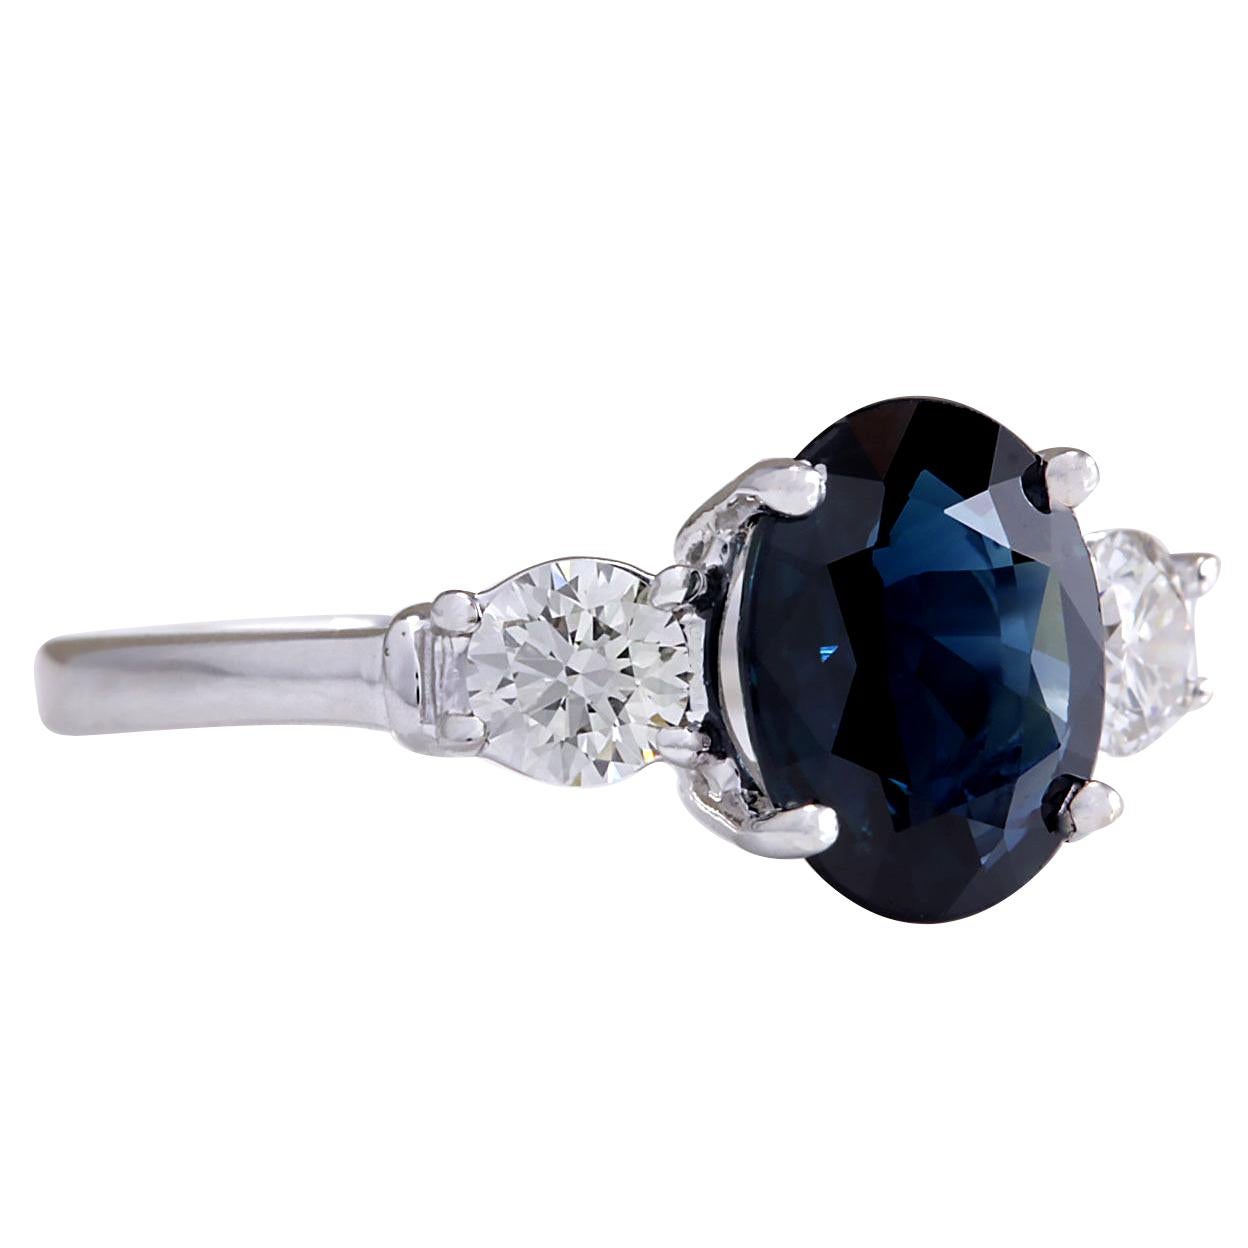 2.45 Carat Natural Sapphire 14 Karat White Gold Diamond Ring
Stamped: 14K White Gold
Total Ring Weight: 2.7 Grams
Total Natural Sapphire Weight is 2.02 Carat (Measures: 9.00x7.00 mm)
Color: Blue
Total Natural Diamond Weight is 0.43 Carat
Color: F-G,